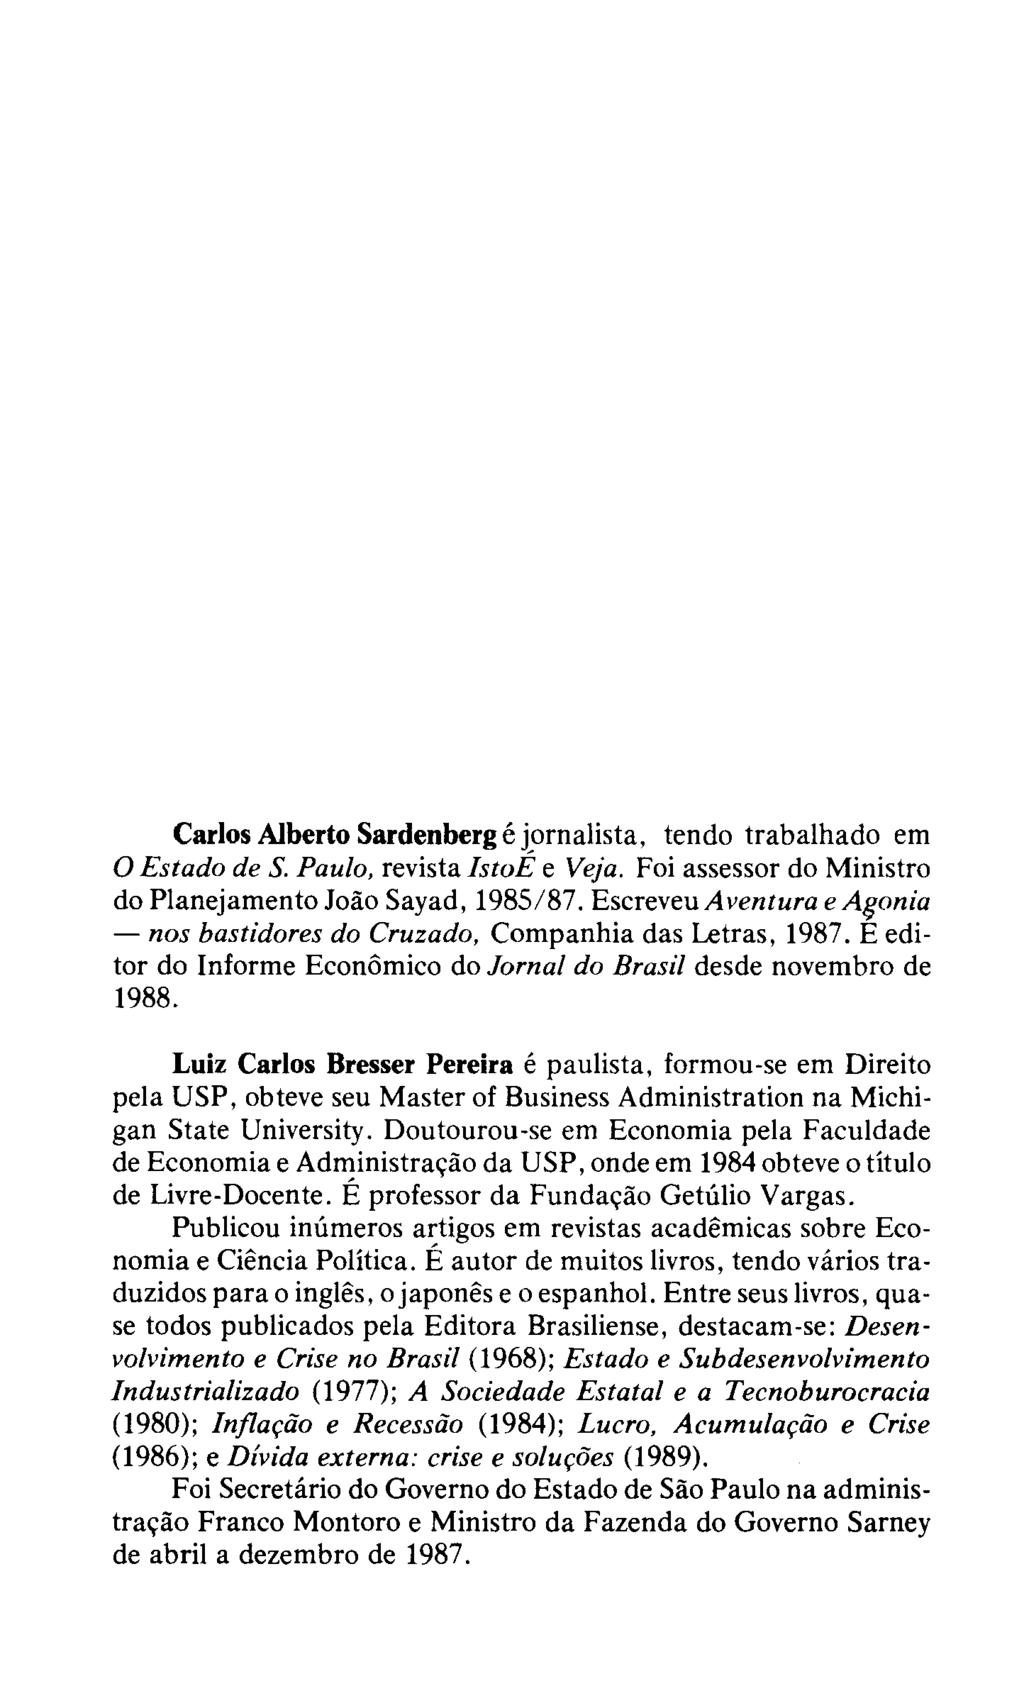 Carlos Alberto Sardenberg e jornalista, tendo trabalhado em o Estado de S. Paulo, revista IstoE e Veja. Foi assessor do Ministro do Planejamento Joao Sayad, 1985/87.